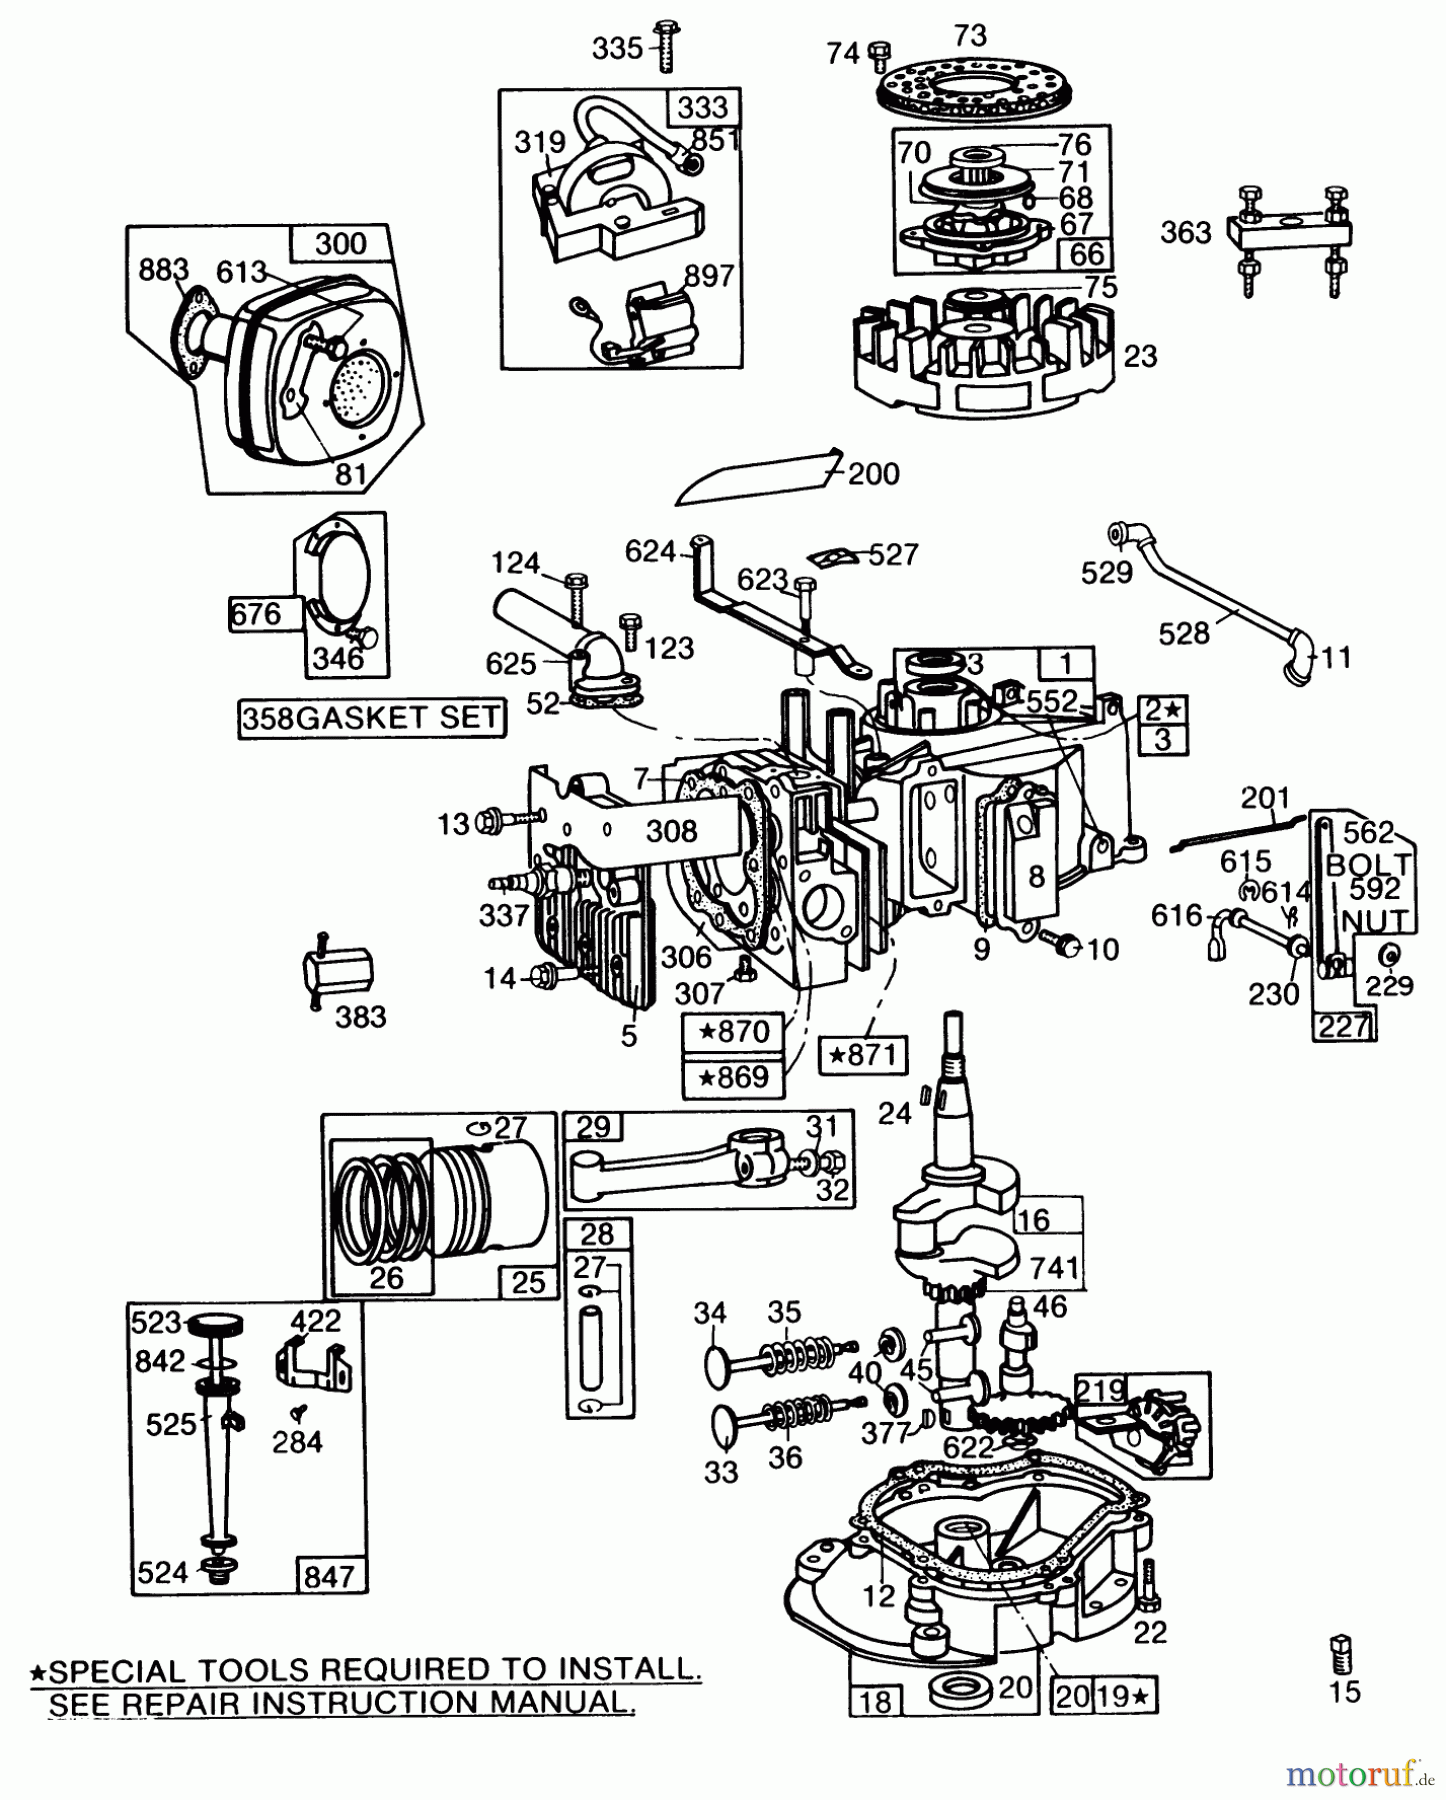  Toro Neu Mowers, Walk-Behind Seite 2 22010 - Toro Lawnmower, 1984 (4000001-4999999) ENGINE BRIGGS & STRATTON MODEL NO. 130902 TYPE 1200-01 #1